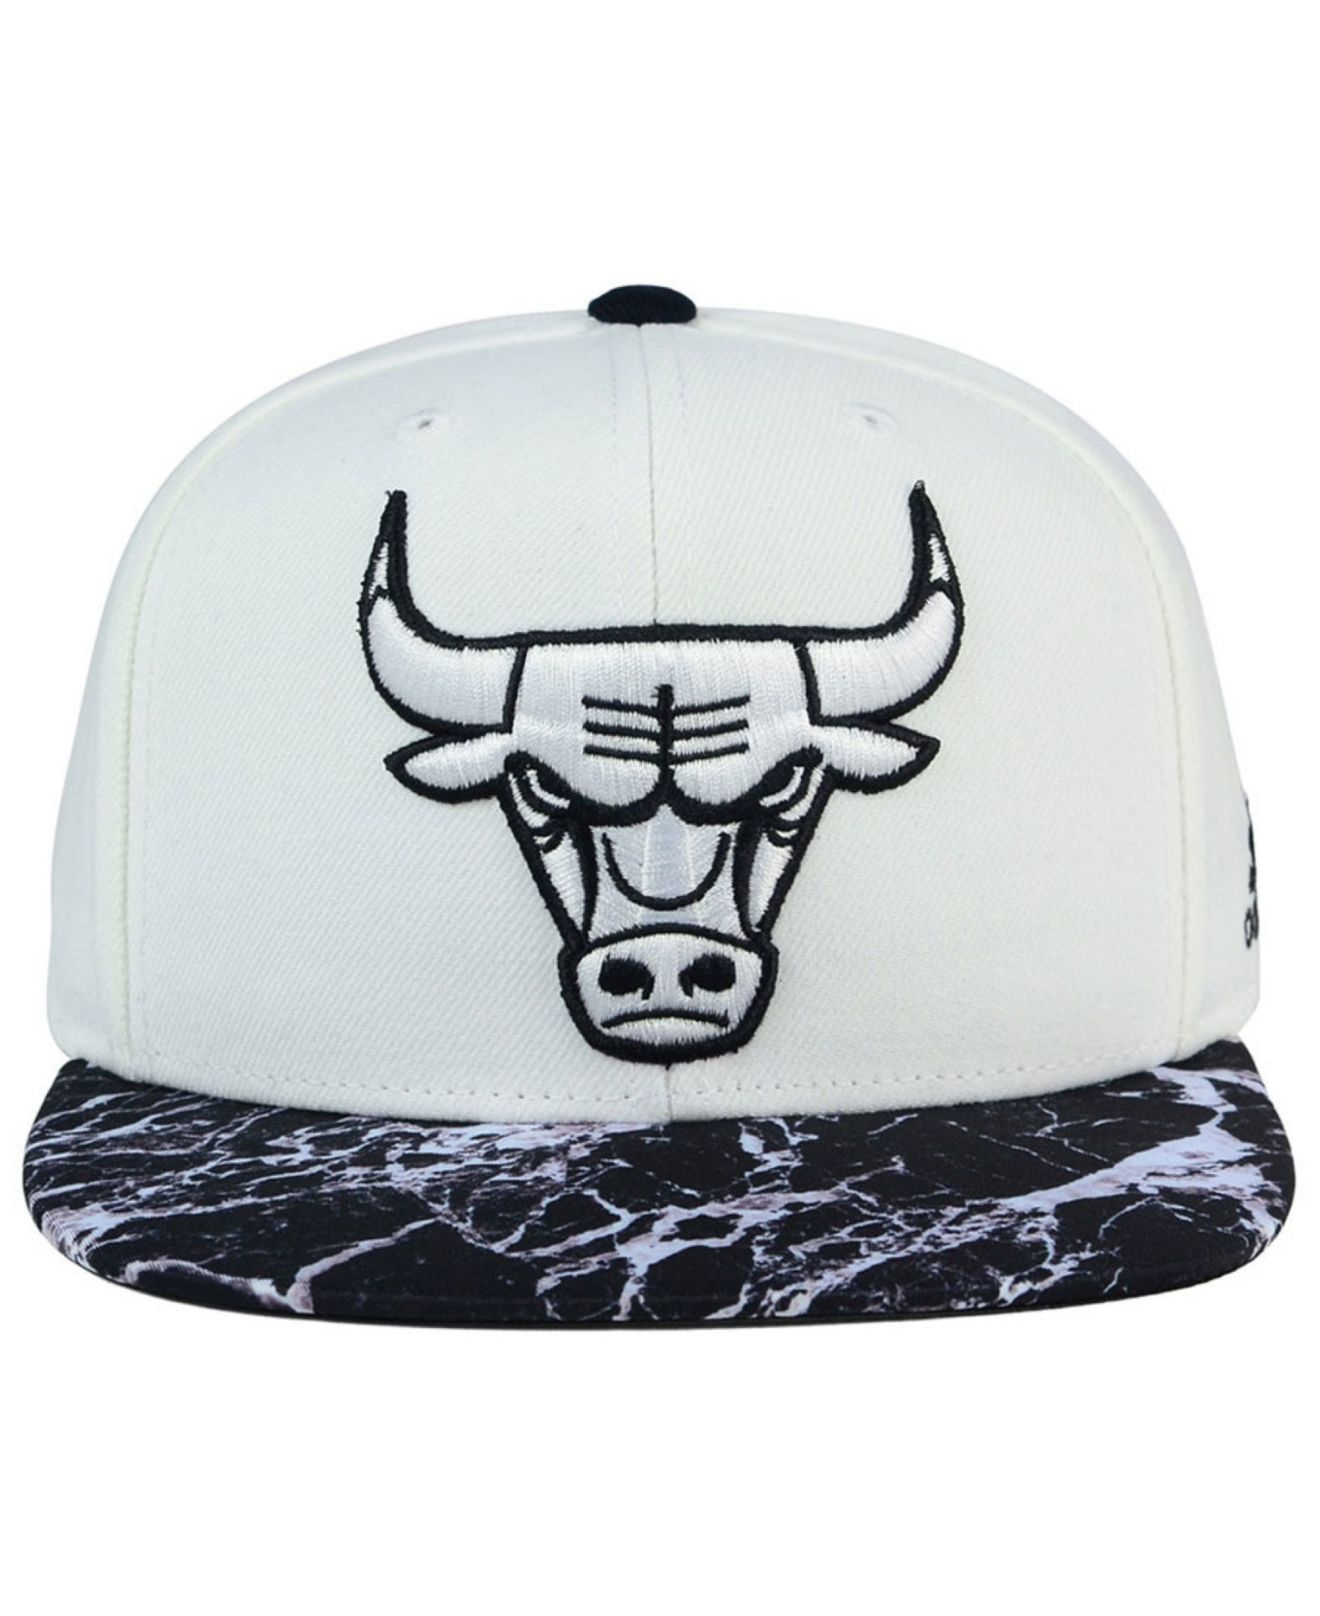 Adidas originals Chicago Bulls White Marble Snapback Cap ...